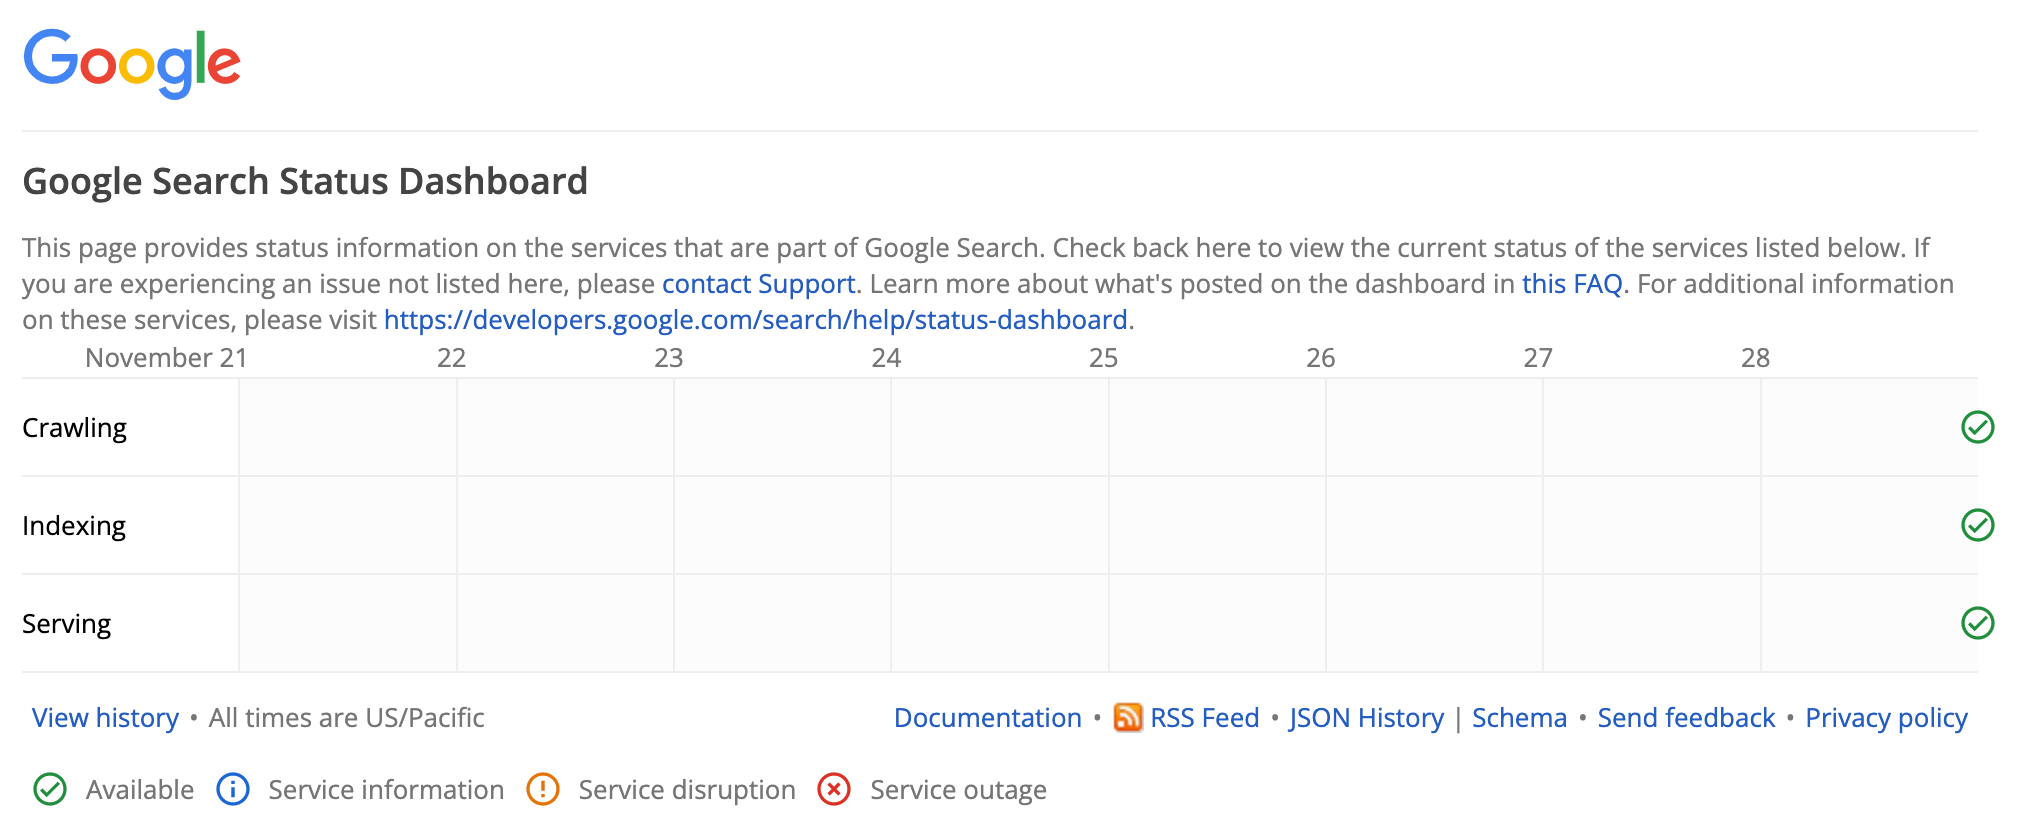 หน้าแดชบอร์ดสถานะของ Google Search ที่แสดงว่าไม่มีเหตุการณ์ที่ยังเกิดขึ้นอย่างต่อเนื่อง